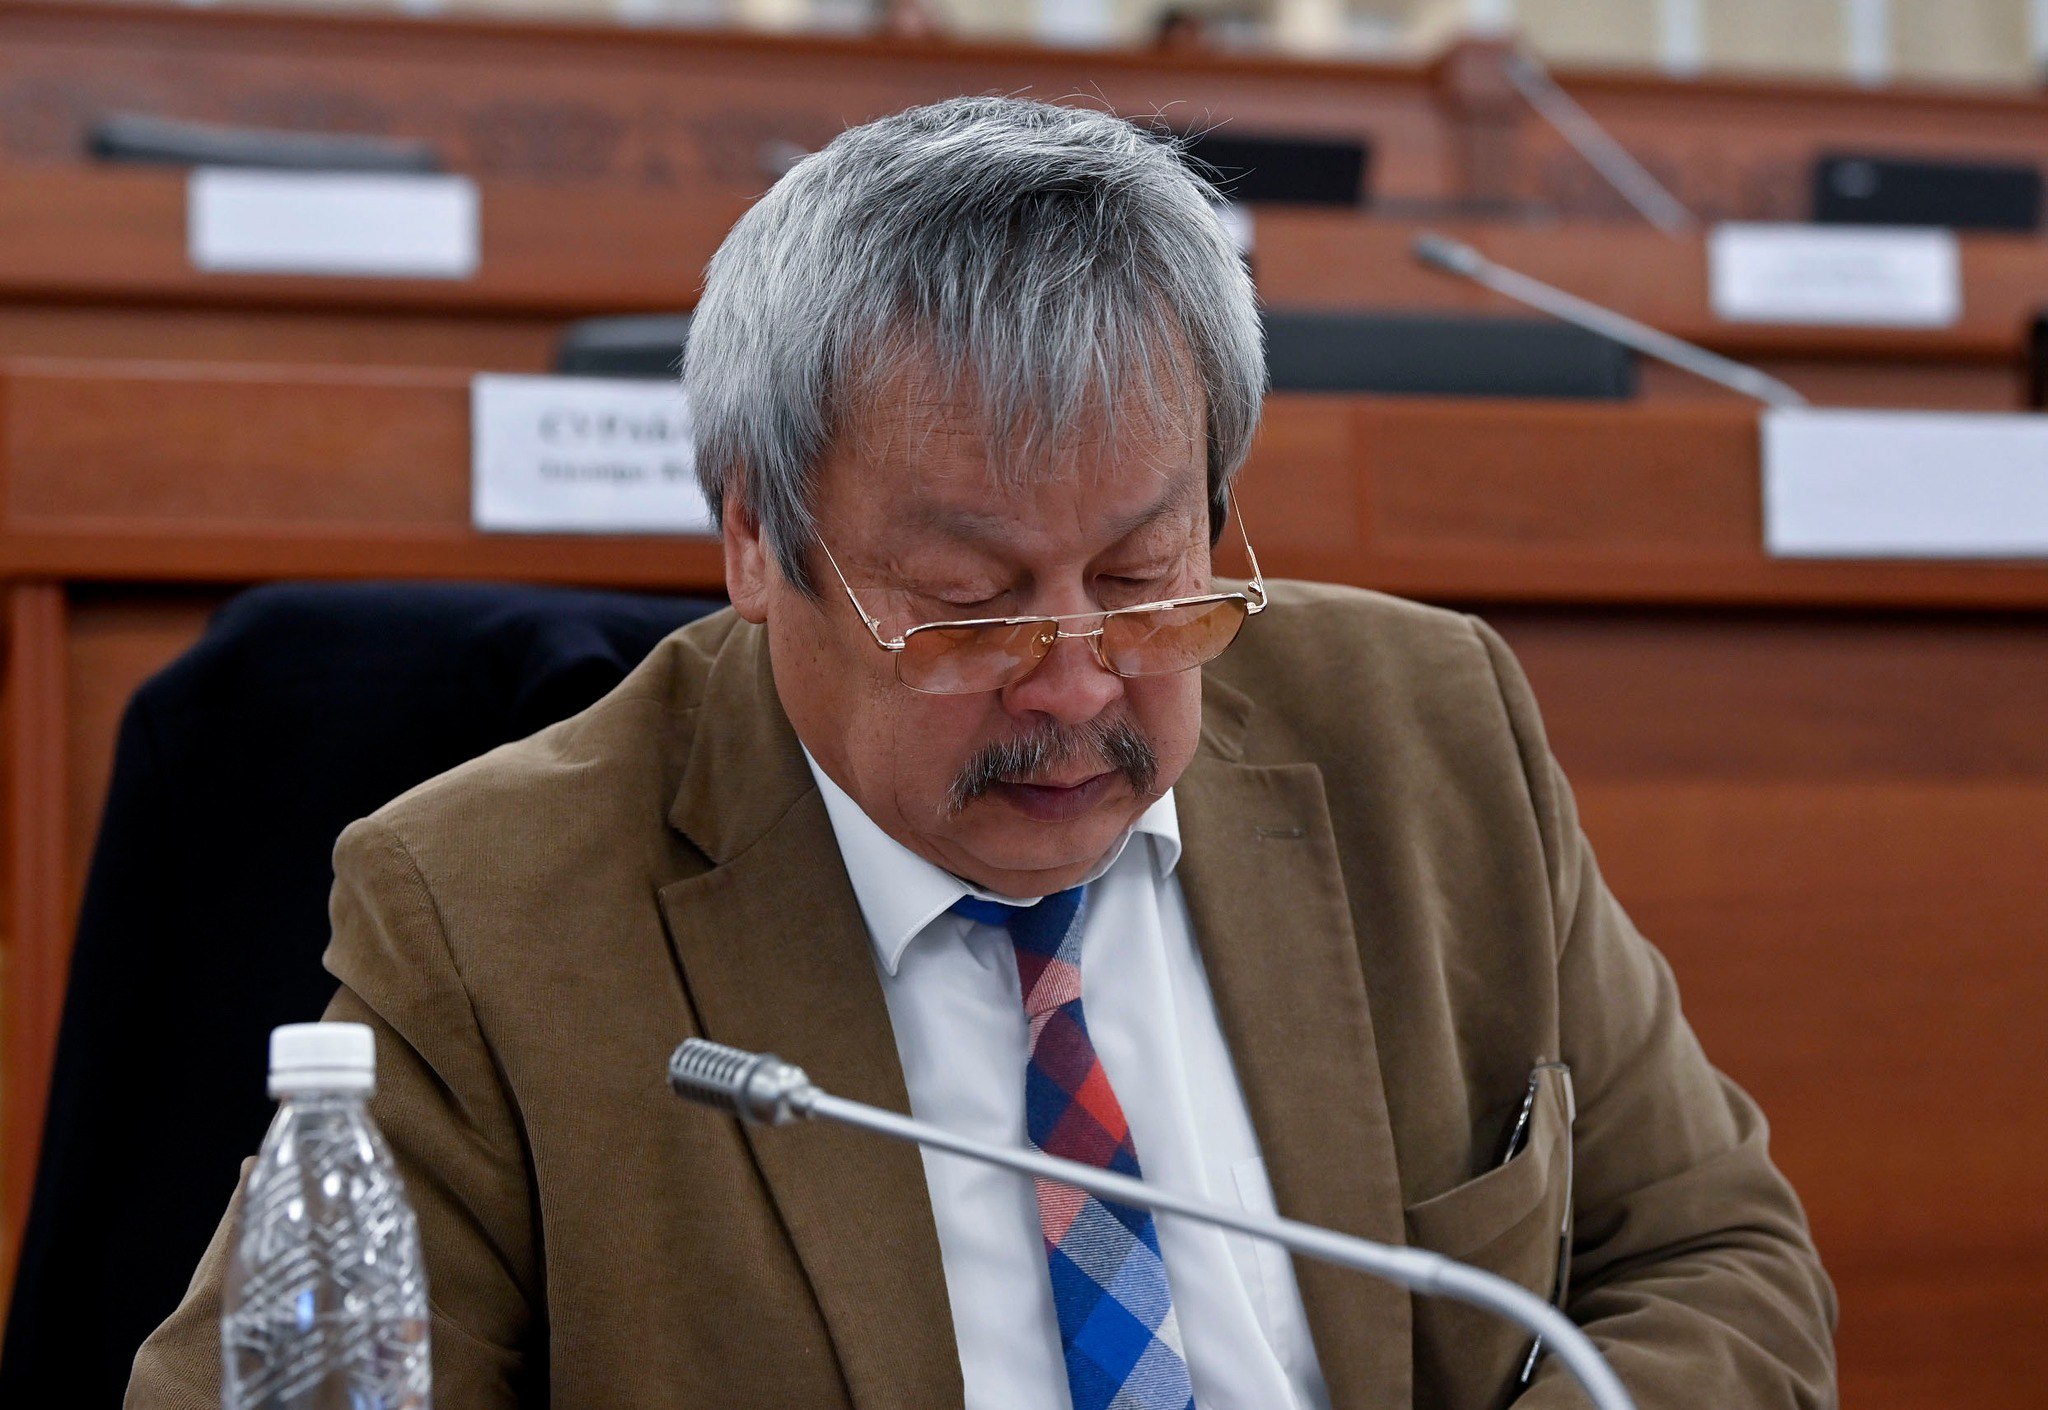 Депутат Малиев вышел из числа инициаторов закона об «иноагентах»